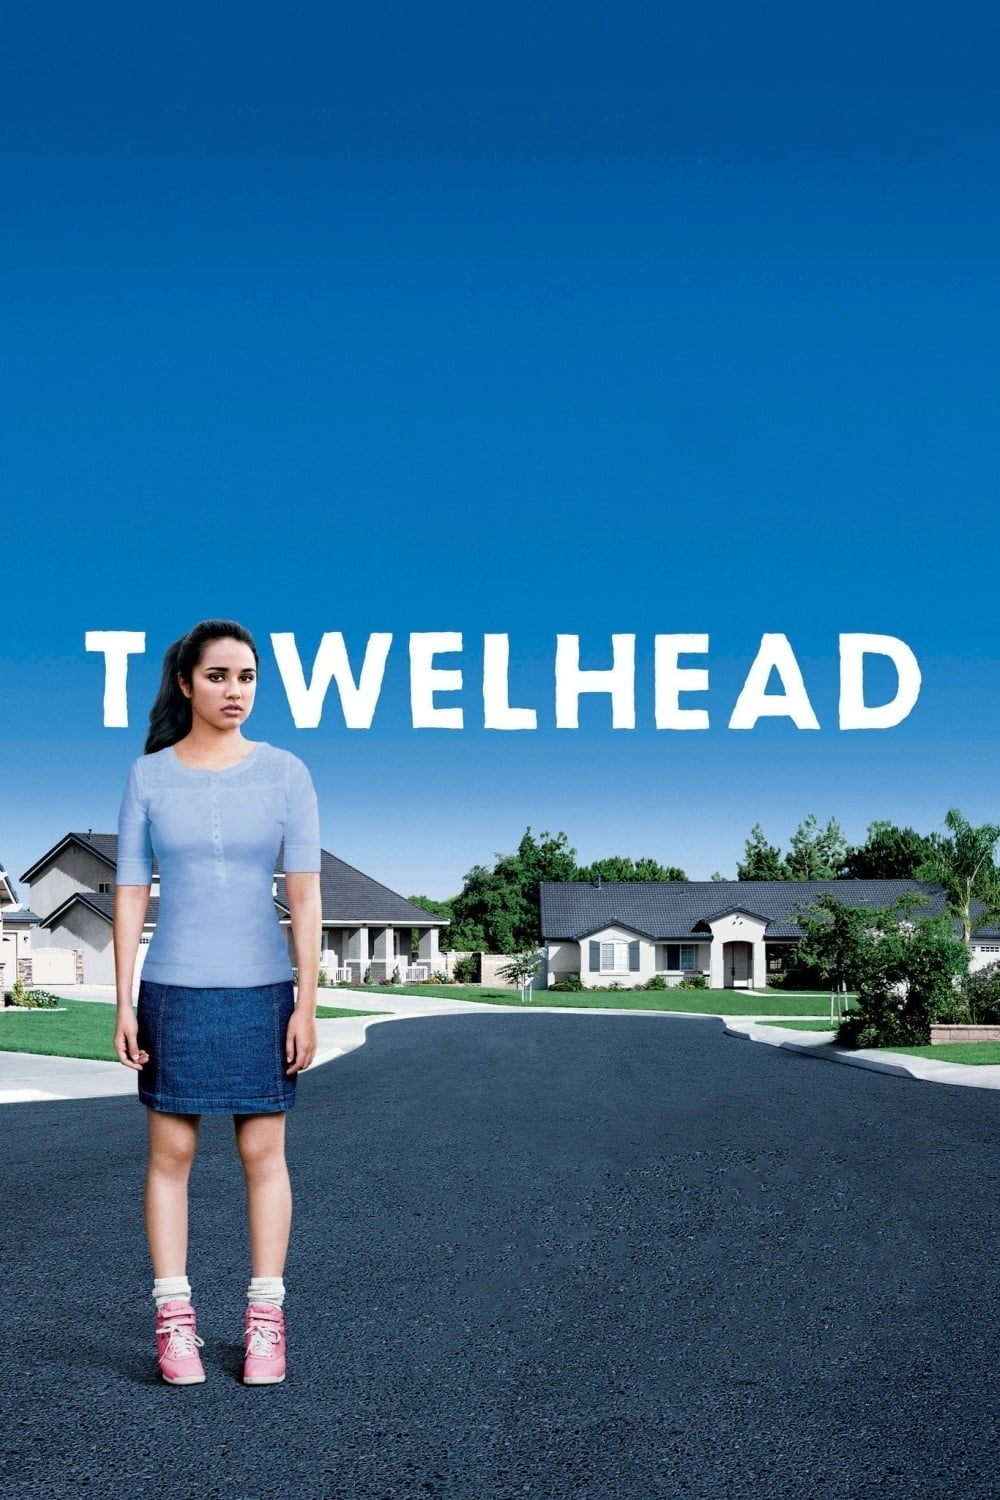 Towelhead (2008)